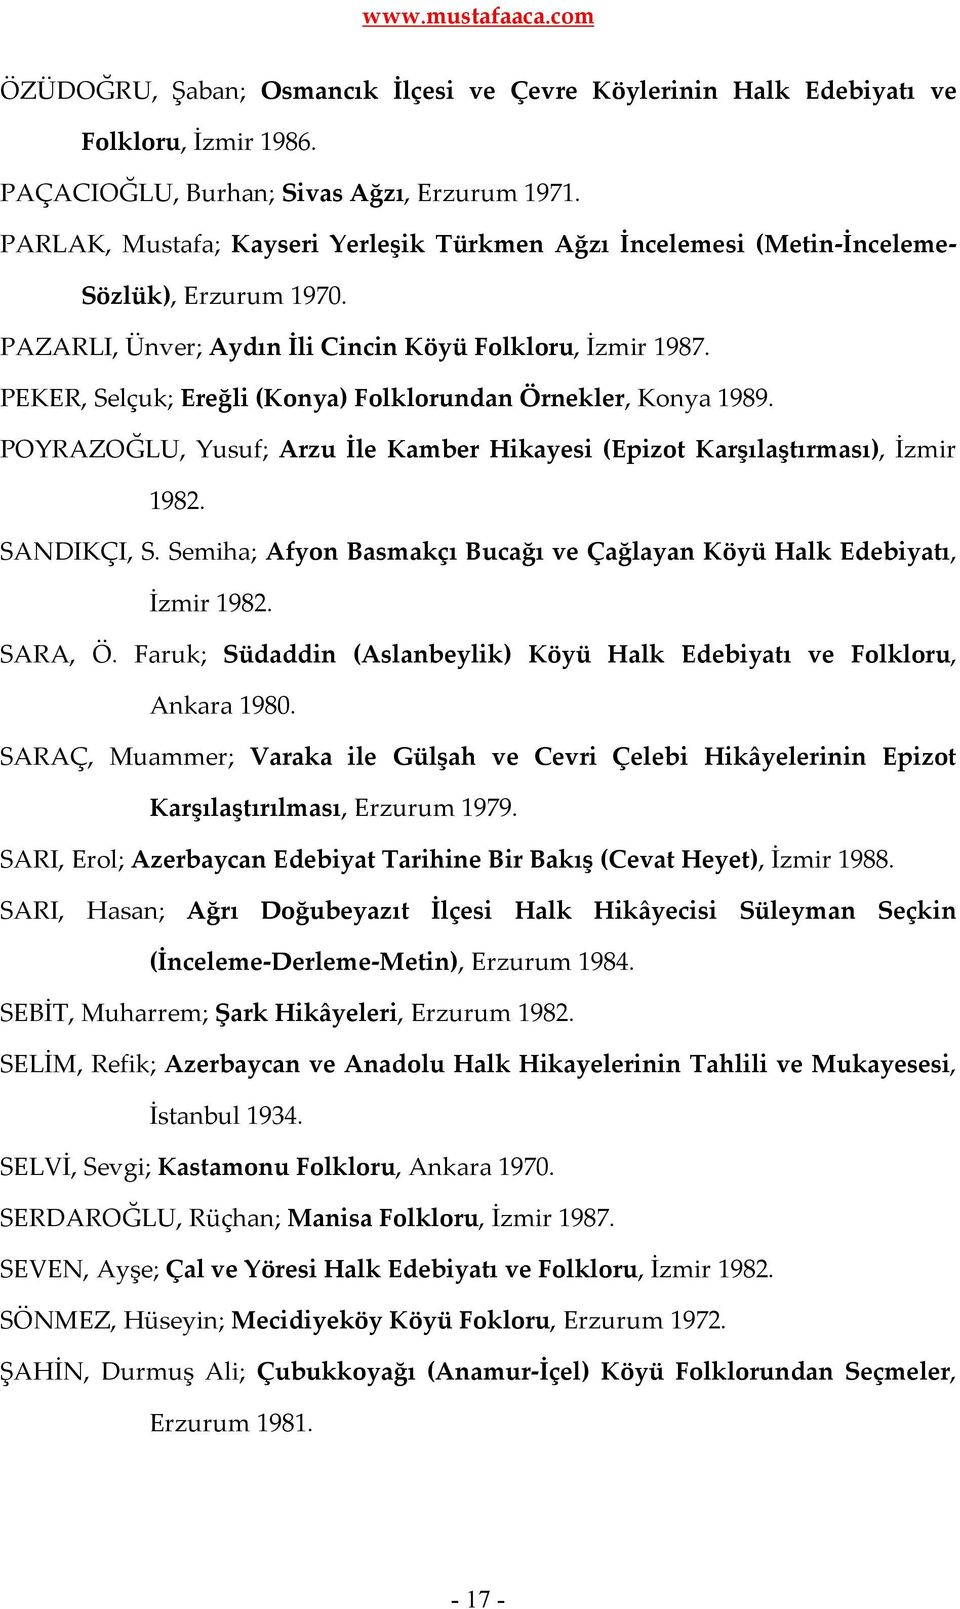 PEKER, Selçuk; Ereğli (Konya) Folklorundan Örnekler, Konya 1989. POYRAZOĞLU, Yusuf; Arzu İle Kamber Hikayesi (Epizot Karşılaştırması), İzmir 1982. SANDIKÇI, S.